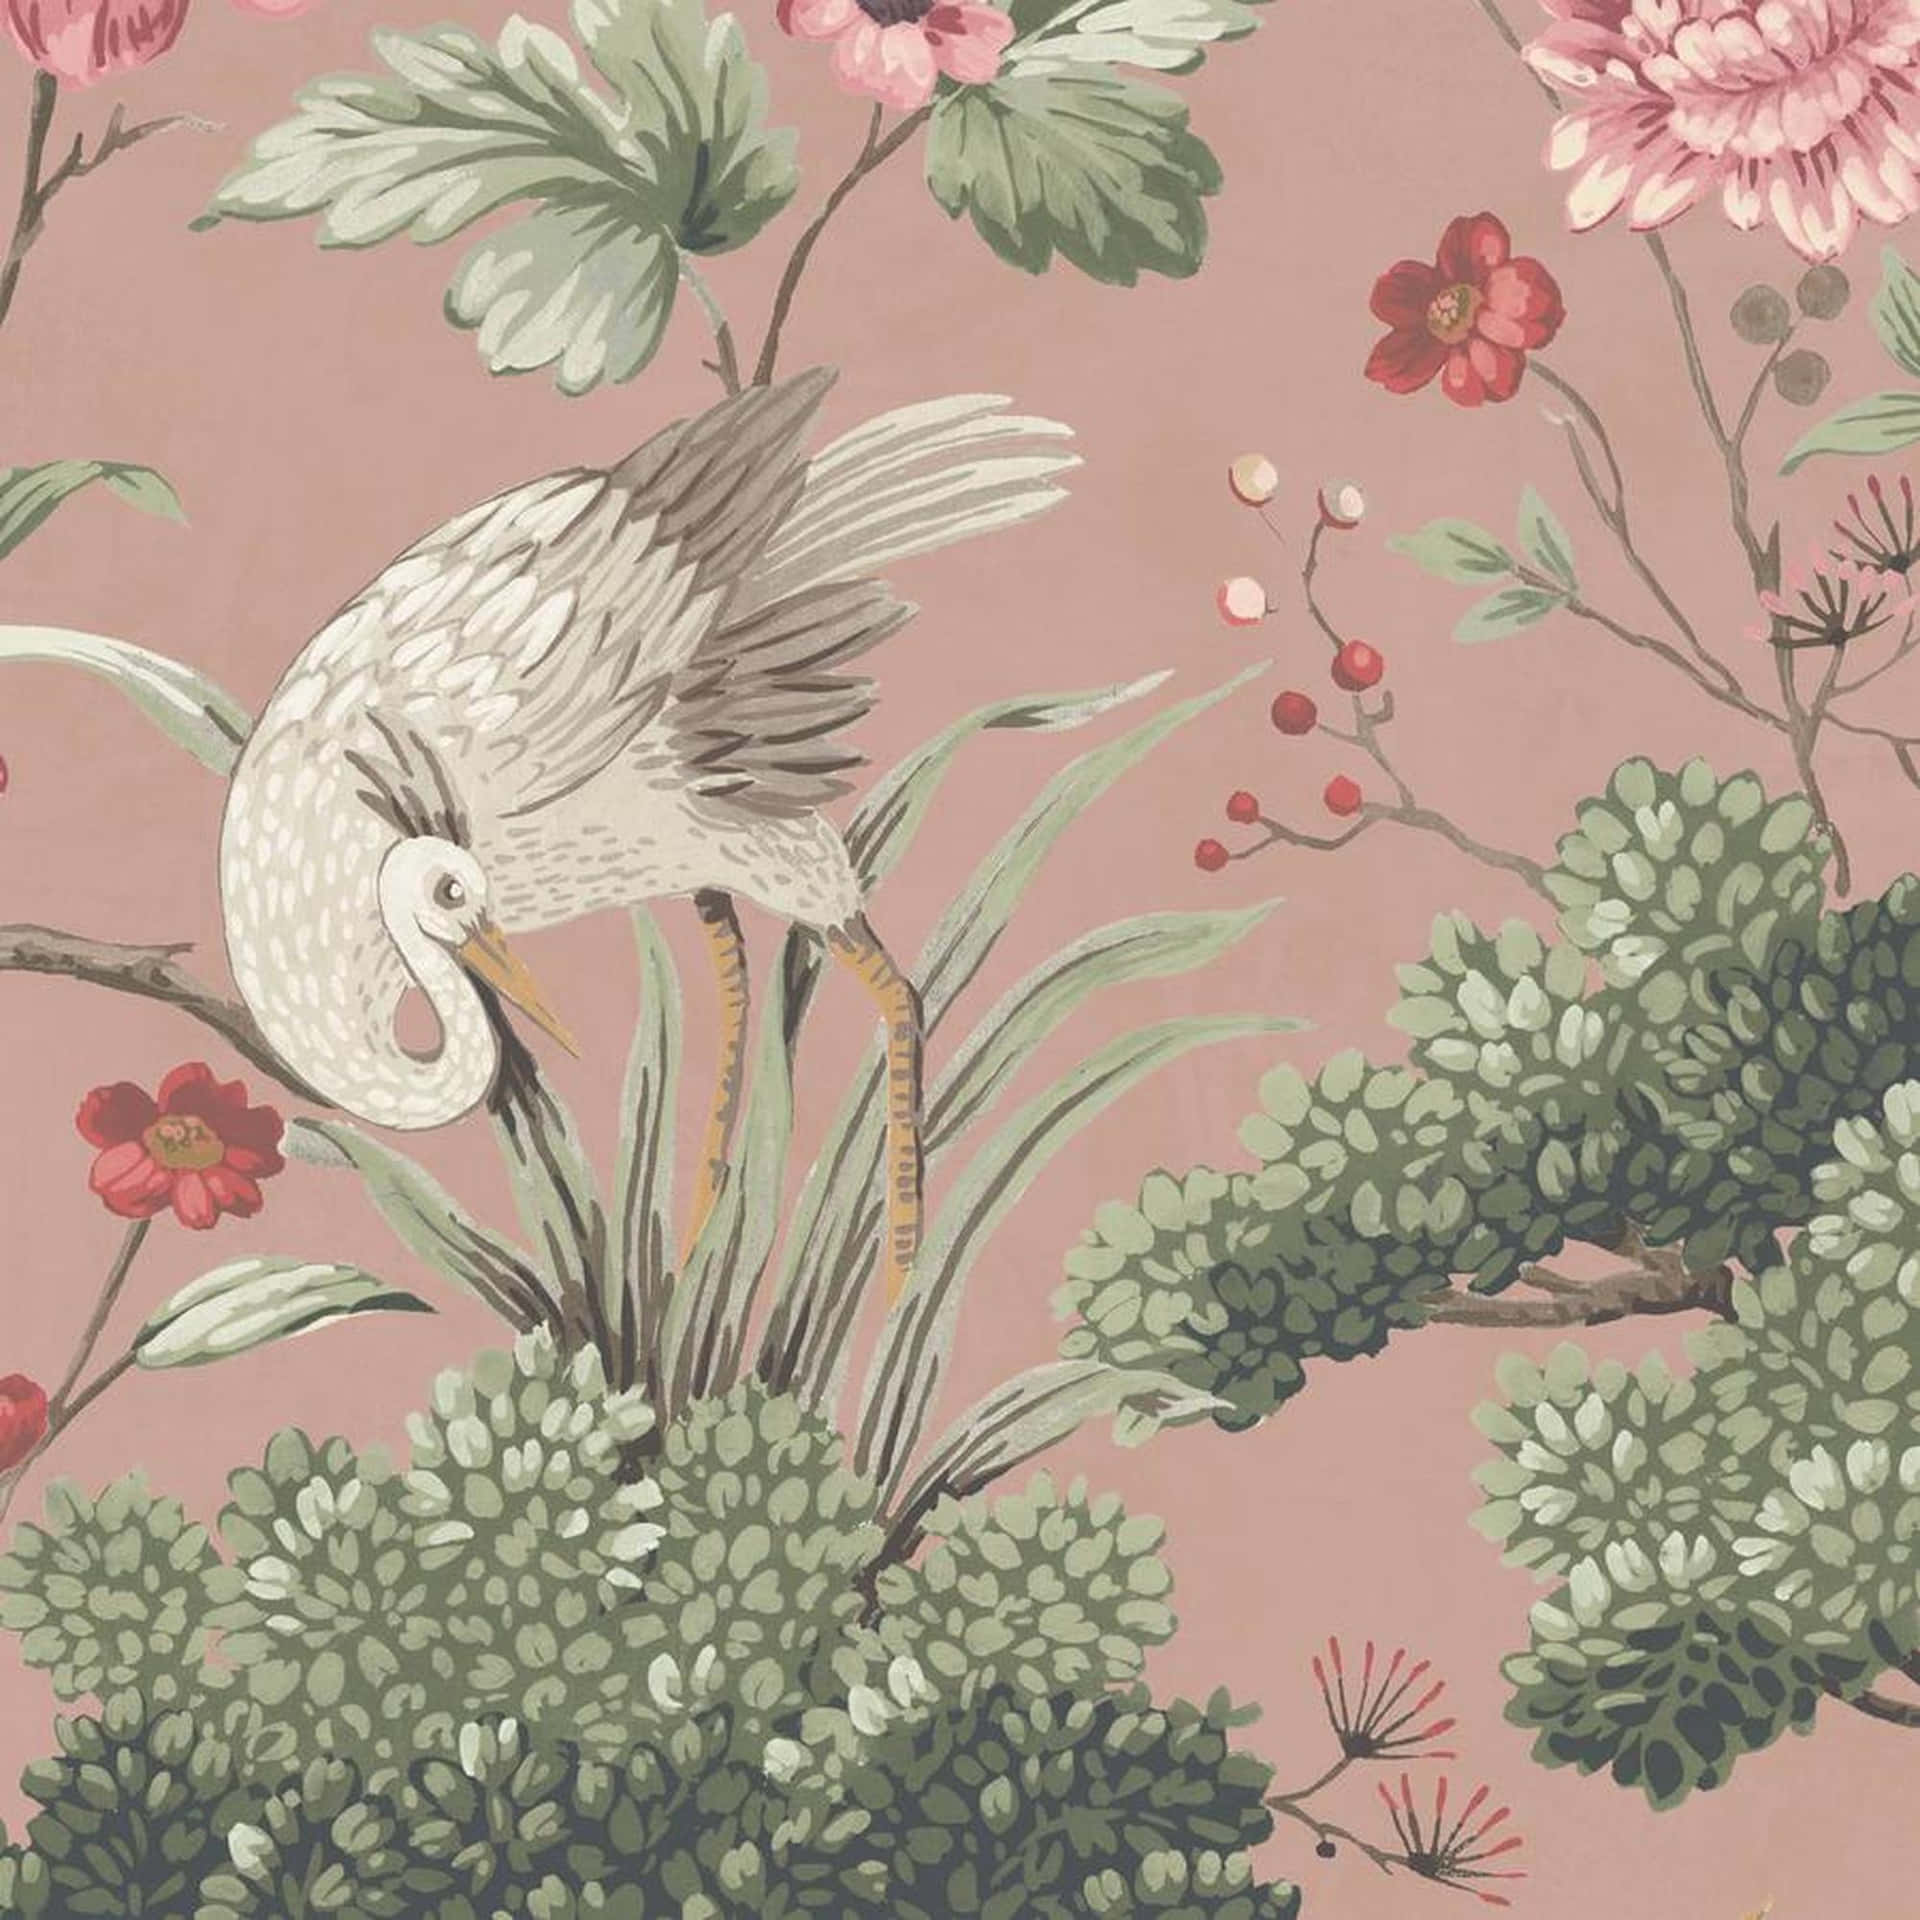 Vintage Floral Bird Illustration Wallpaper